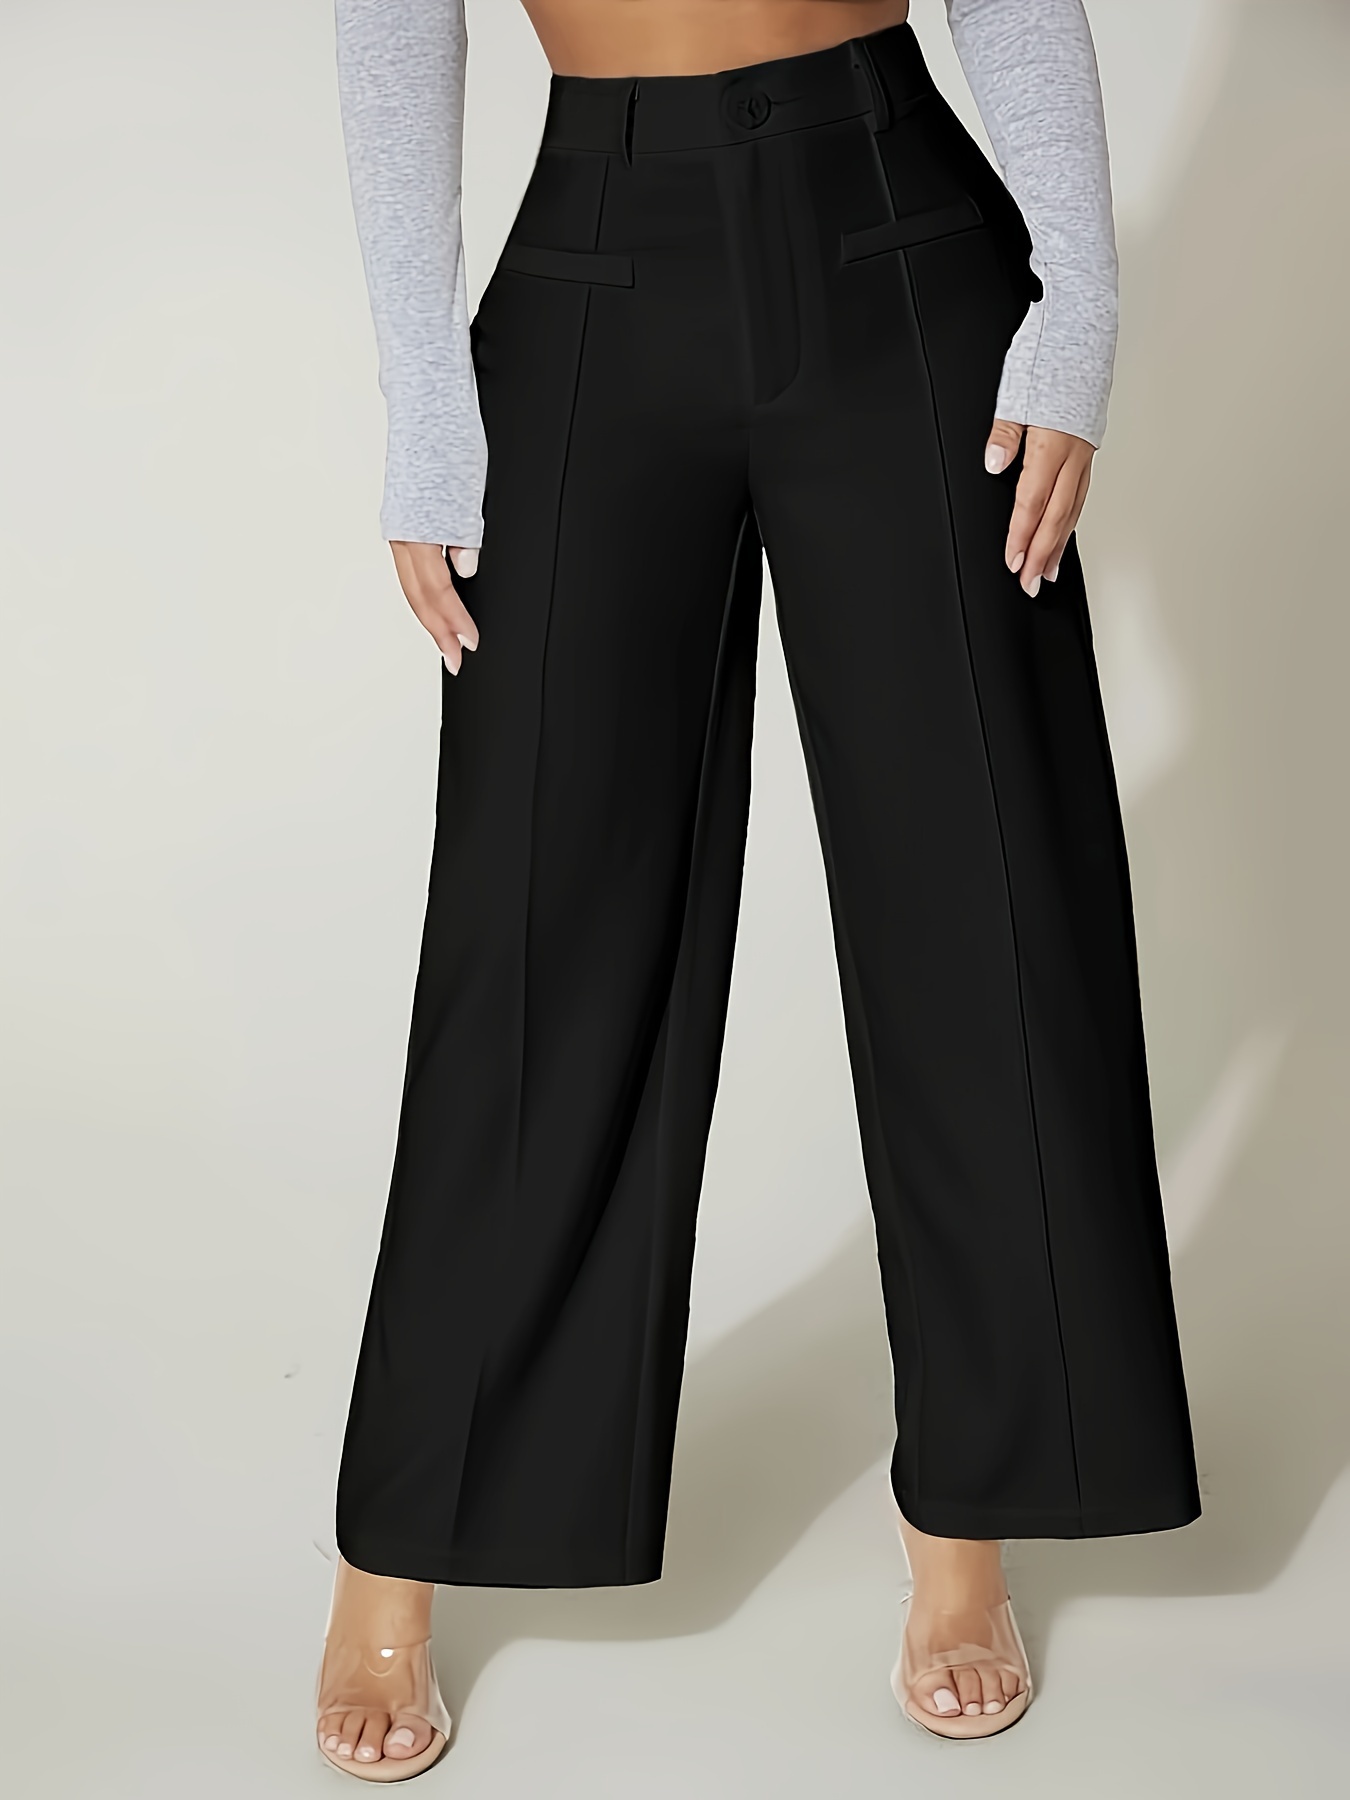 Pantalones Sólidos A Medida, Pantalones De Trabajo De Cintura Alta Y Pierna  Ancha, Ropa De Mujer